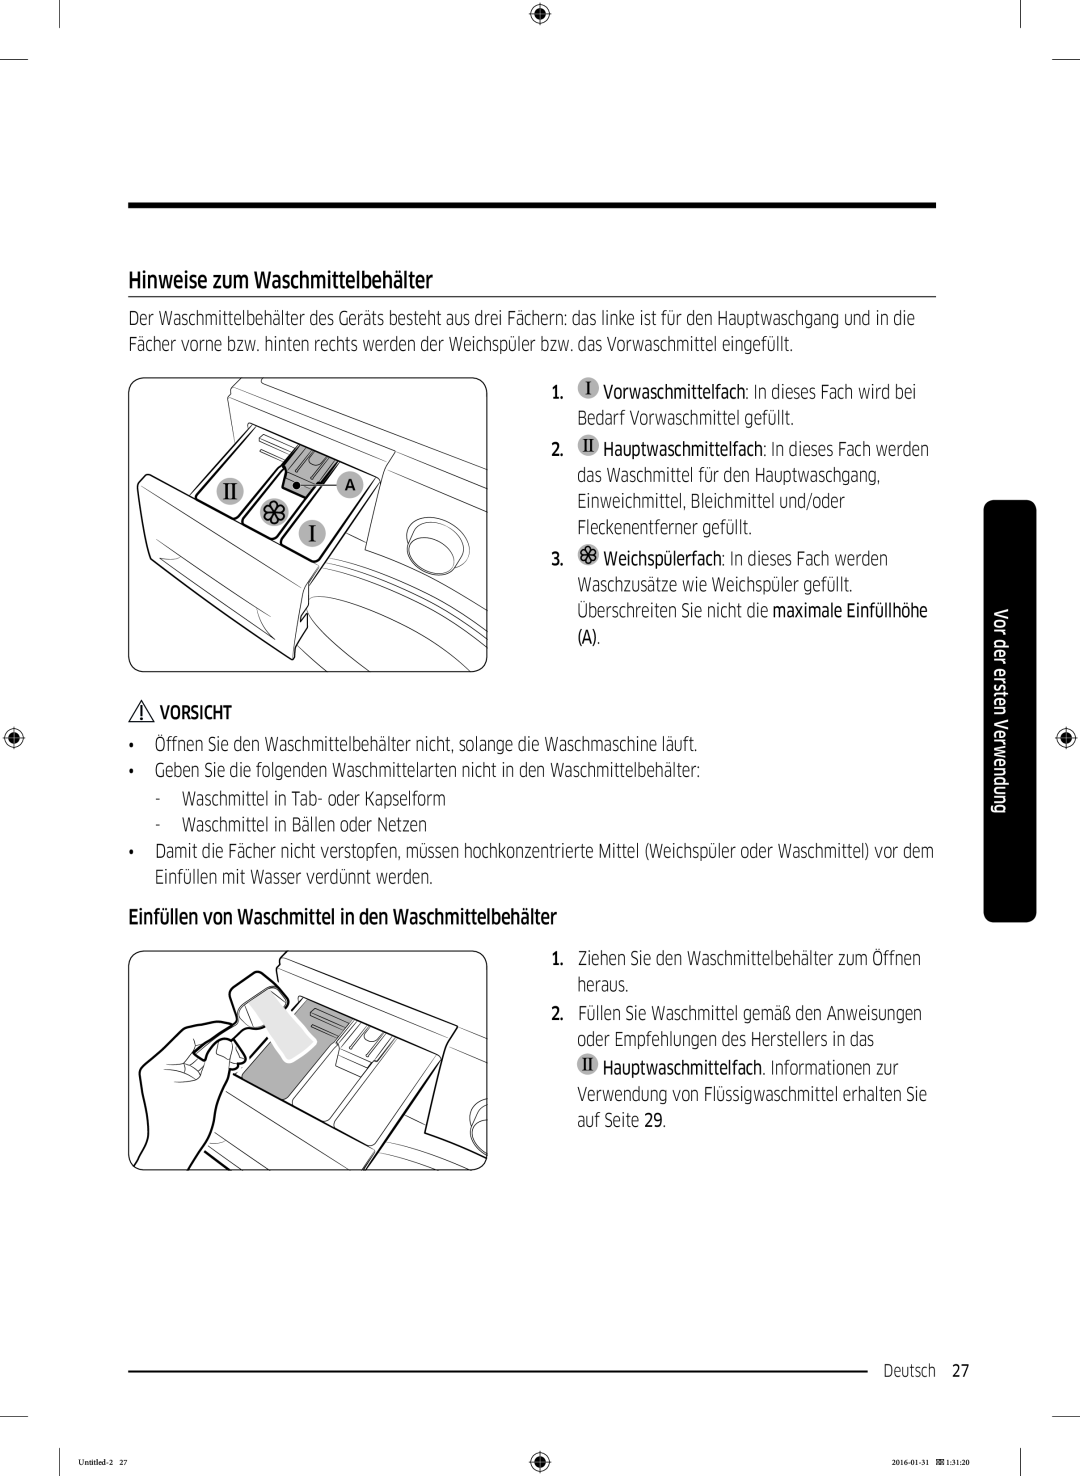 Samsung WW80K5400UW/EG manual Hinweise zum Waschmittelbehälter, Einfüllen von Waschmittel in den Waschmittelbehälter 